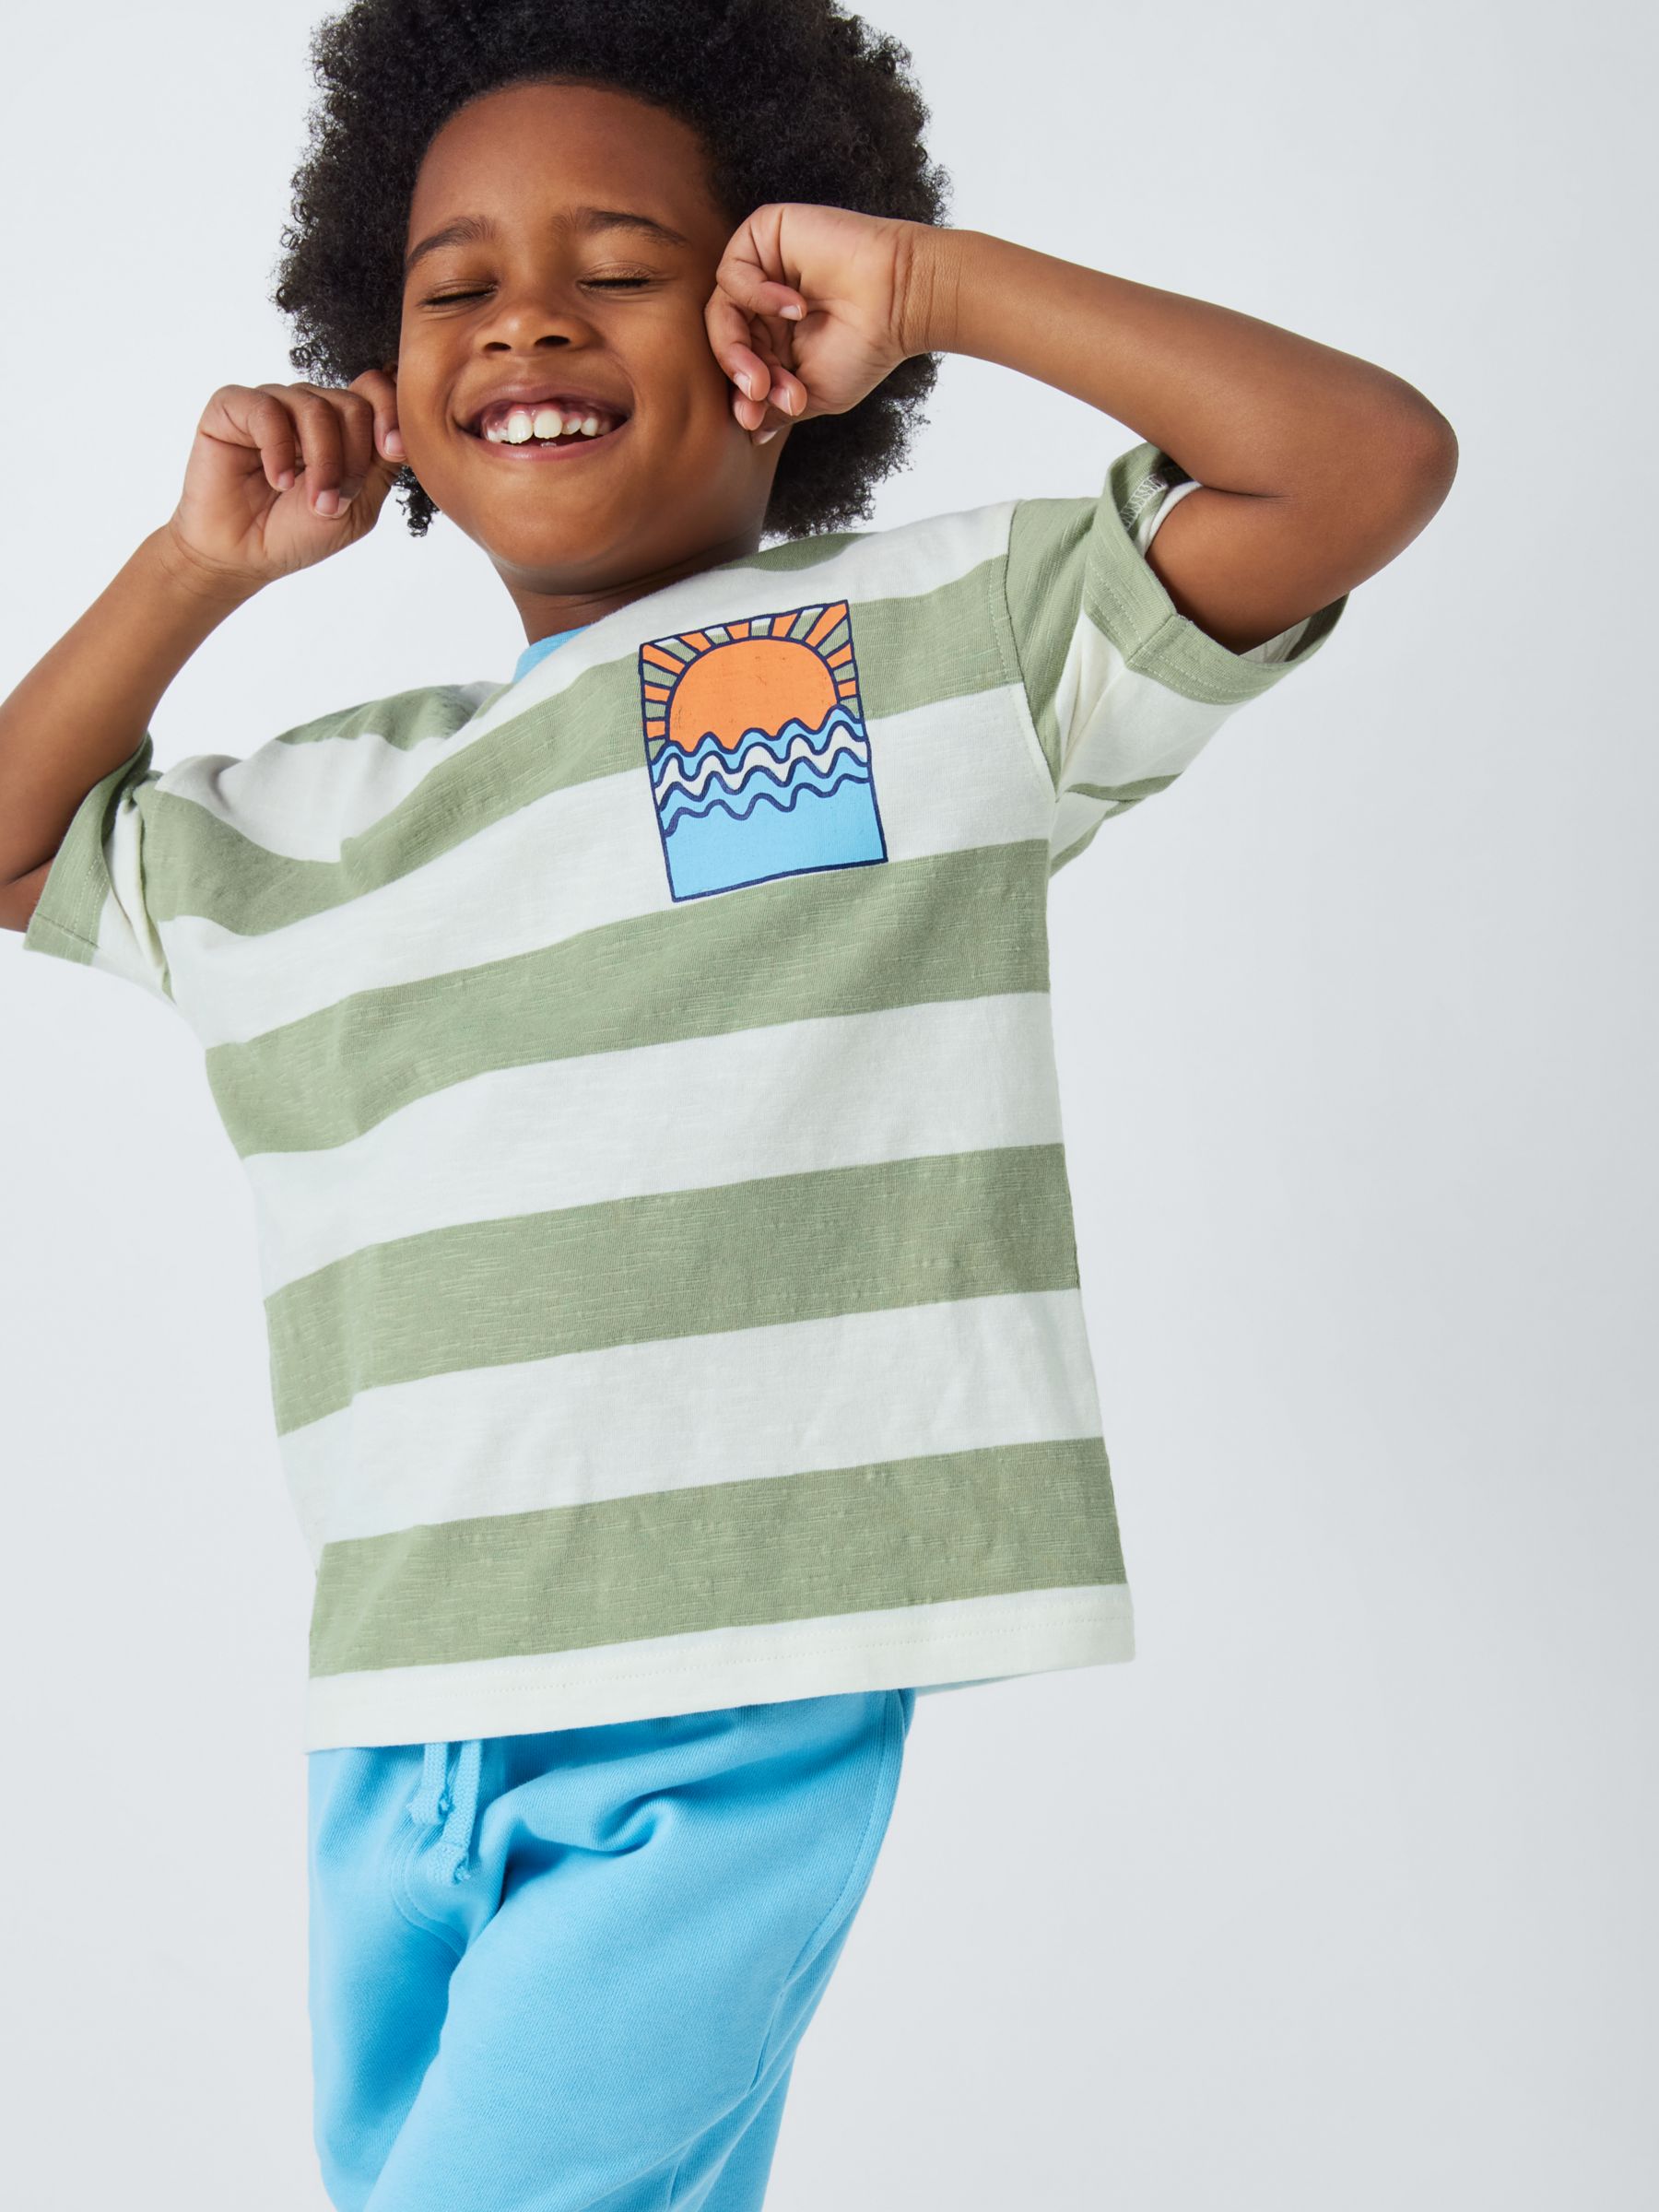 John Lewis ANYDAY Kids' Stripe Sun Graphic T-Shirt, Sage Green, 8 years